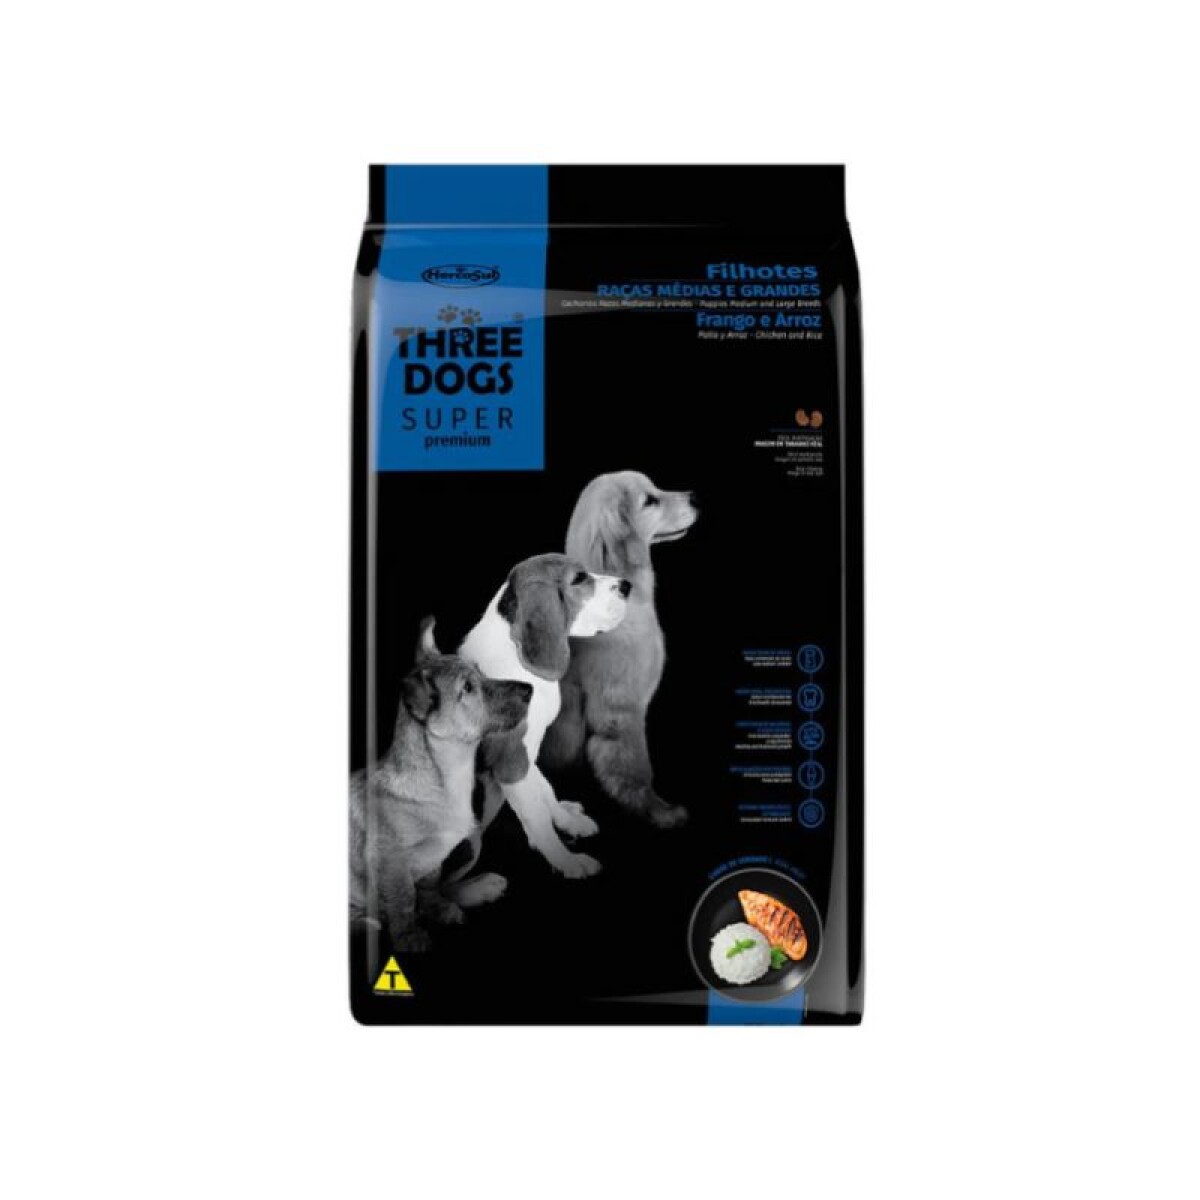 THREE DOGS SUPER PREMIUM FILHOTES MED/GDES 3 KG - Three Dogs Super Premium Filhotes Med/gdes 3 Kg 